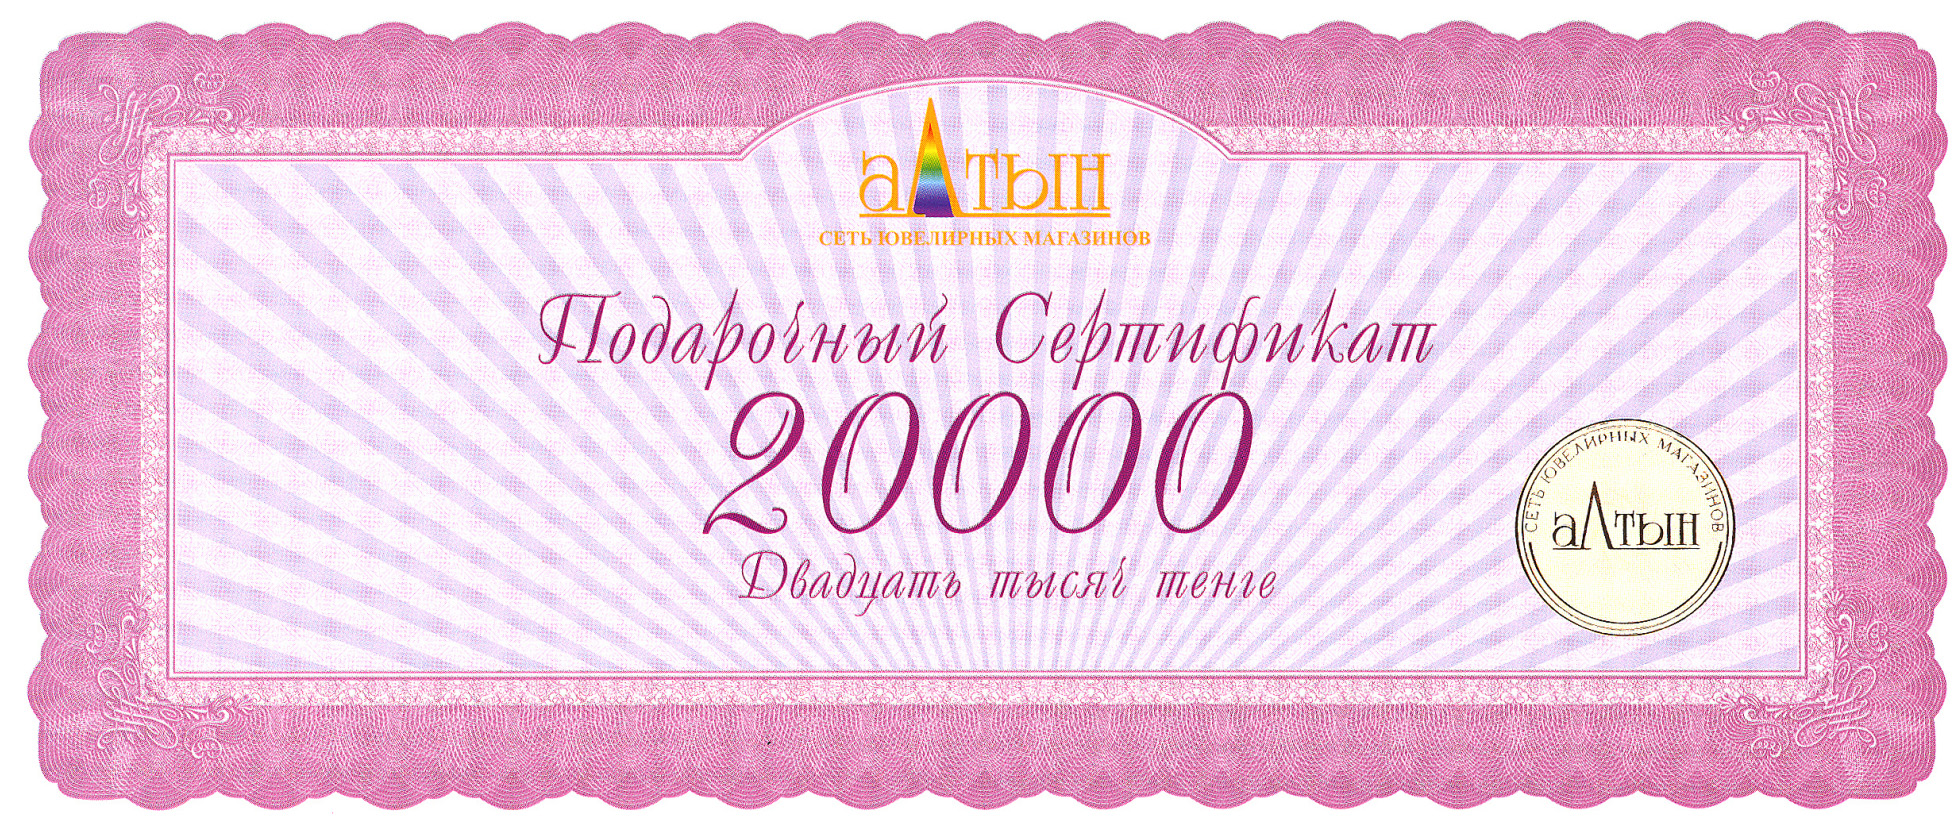 Подарочный сертификат на 20000 KZT